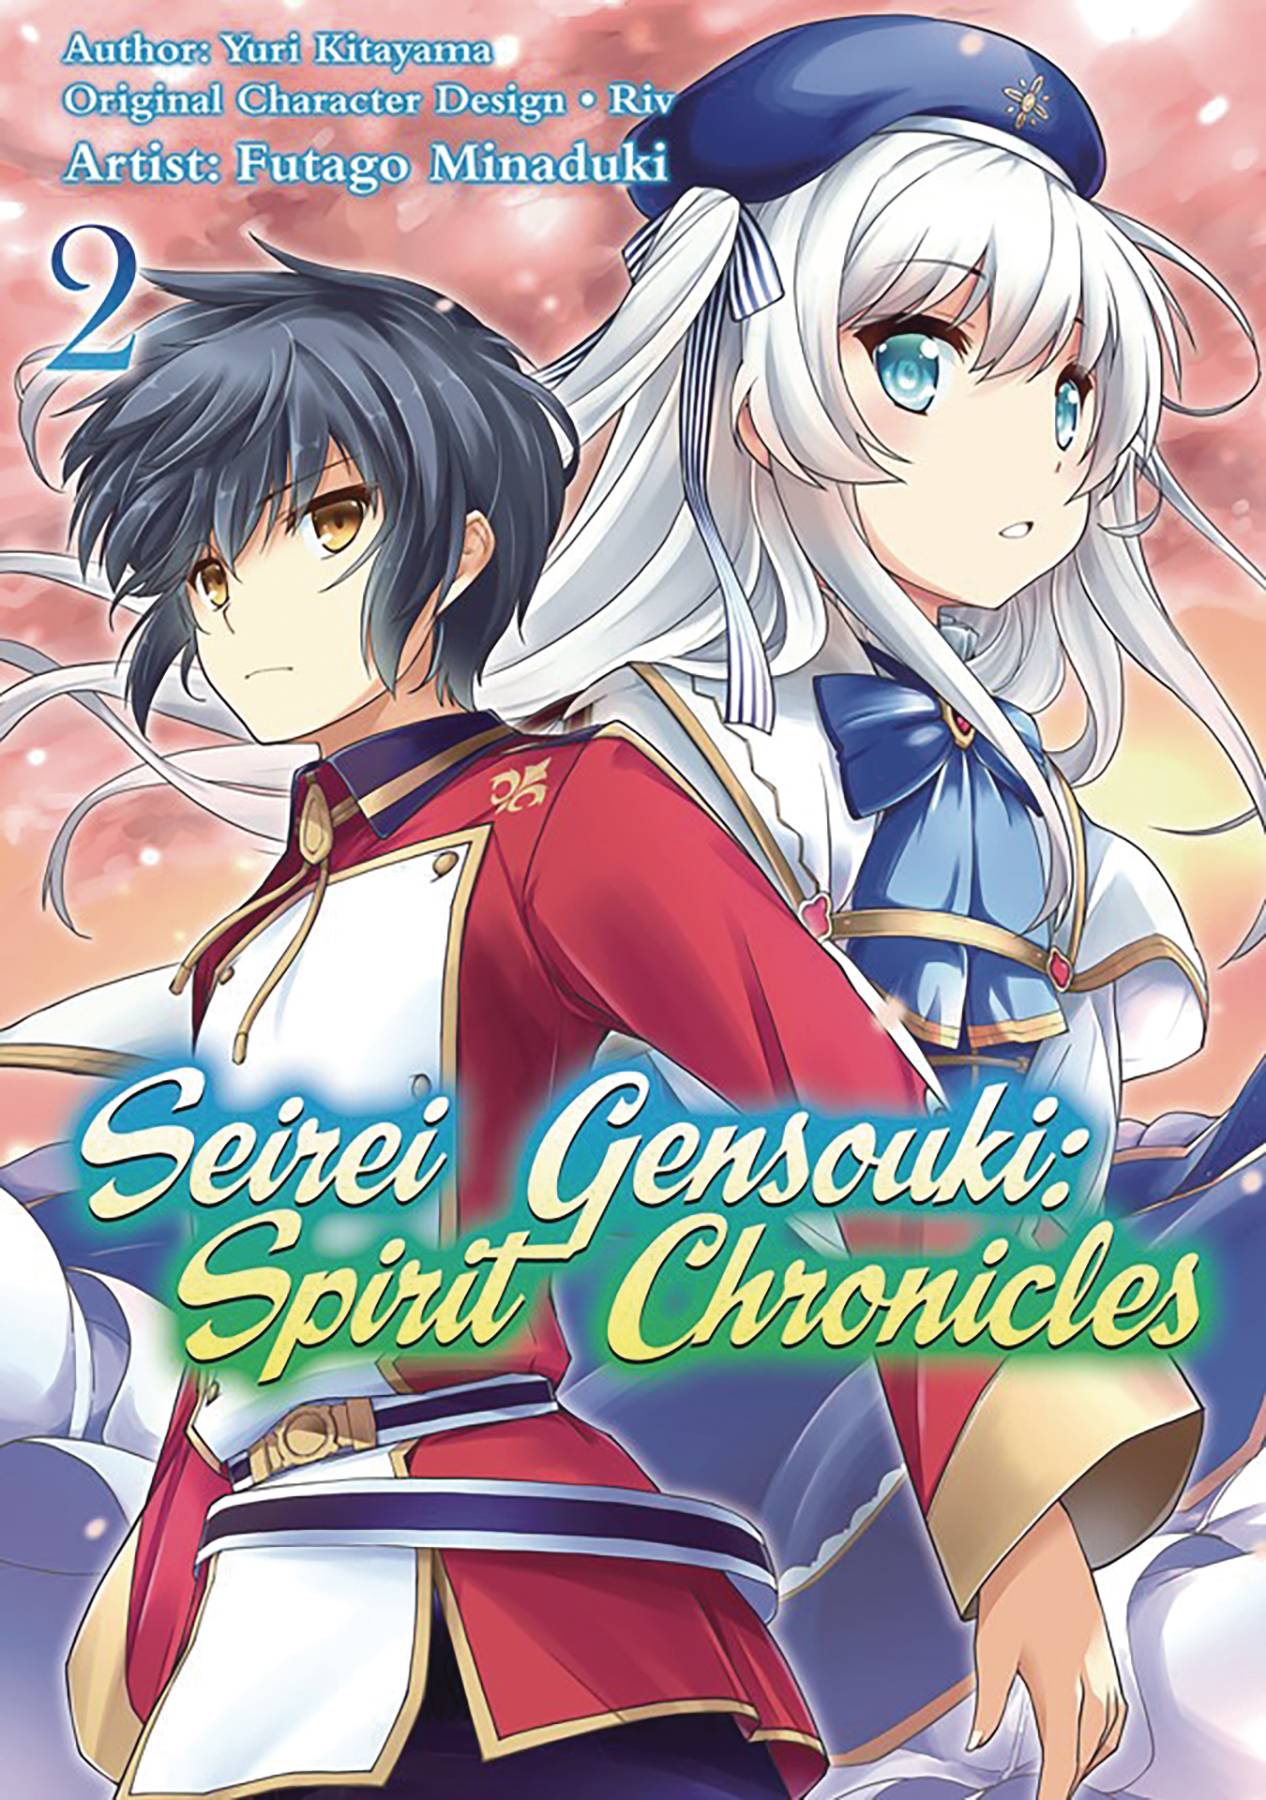 Seirei Gensouki (Spirit Chronicles) First Impressions